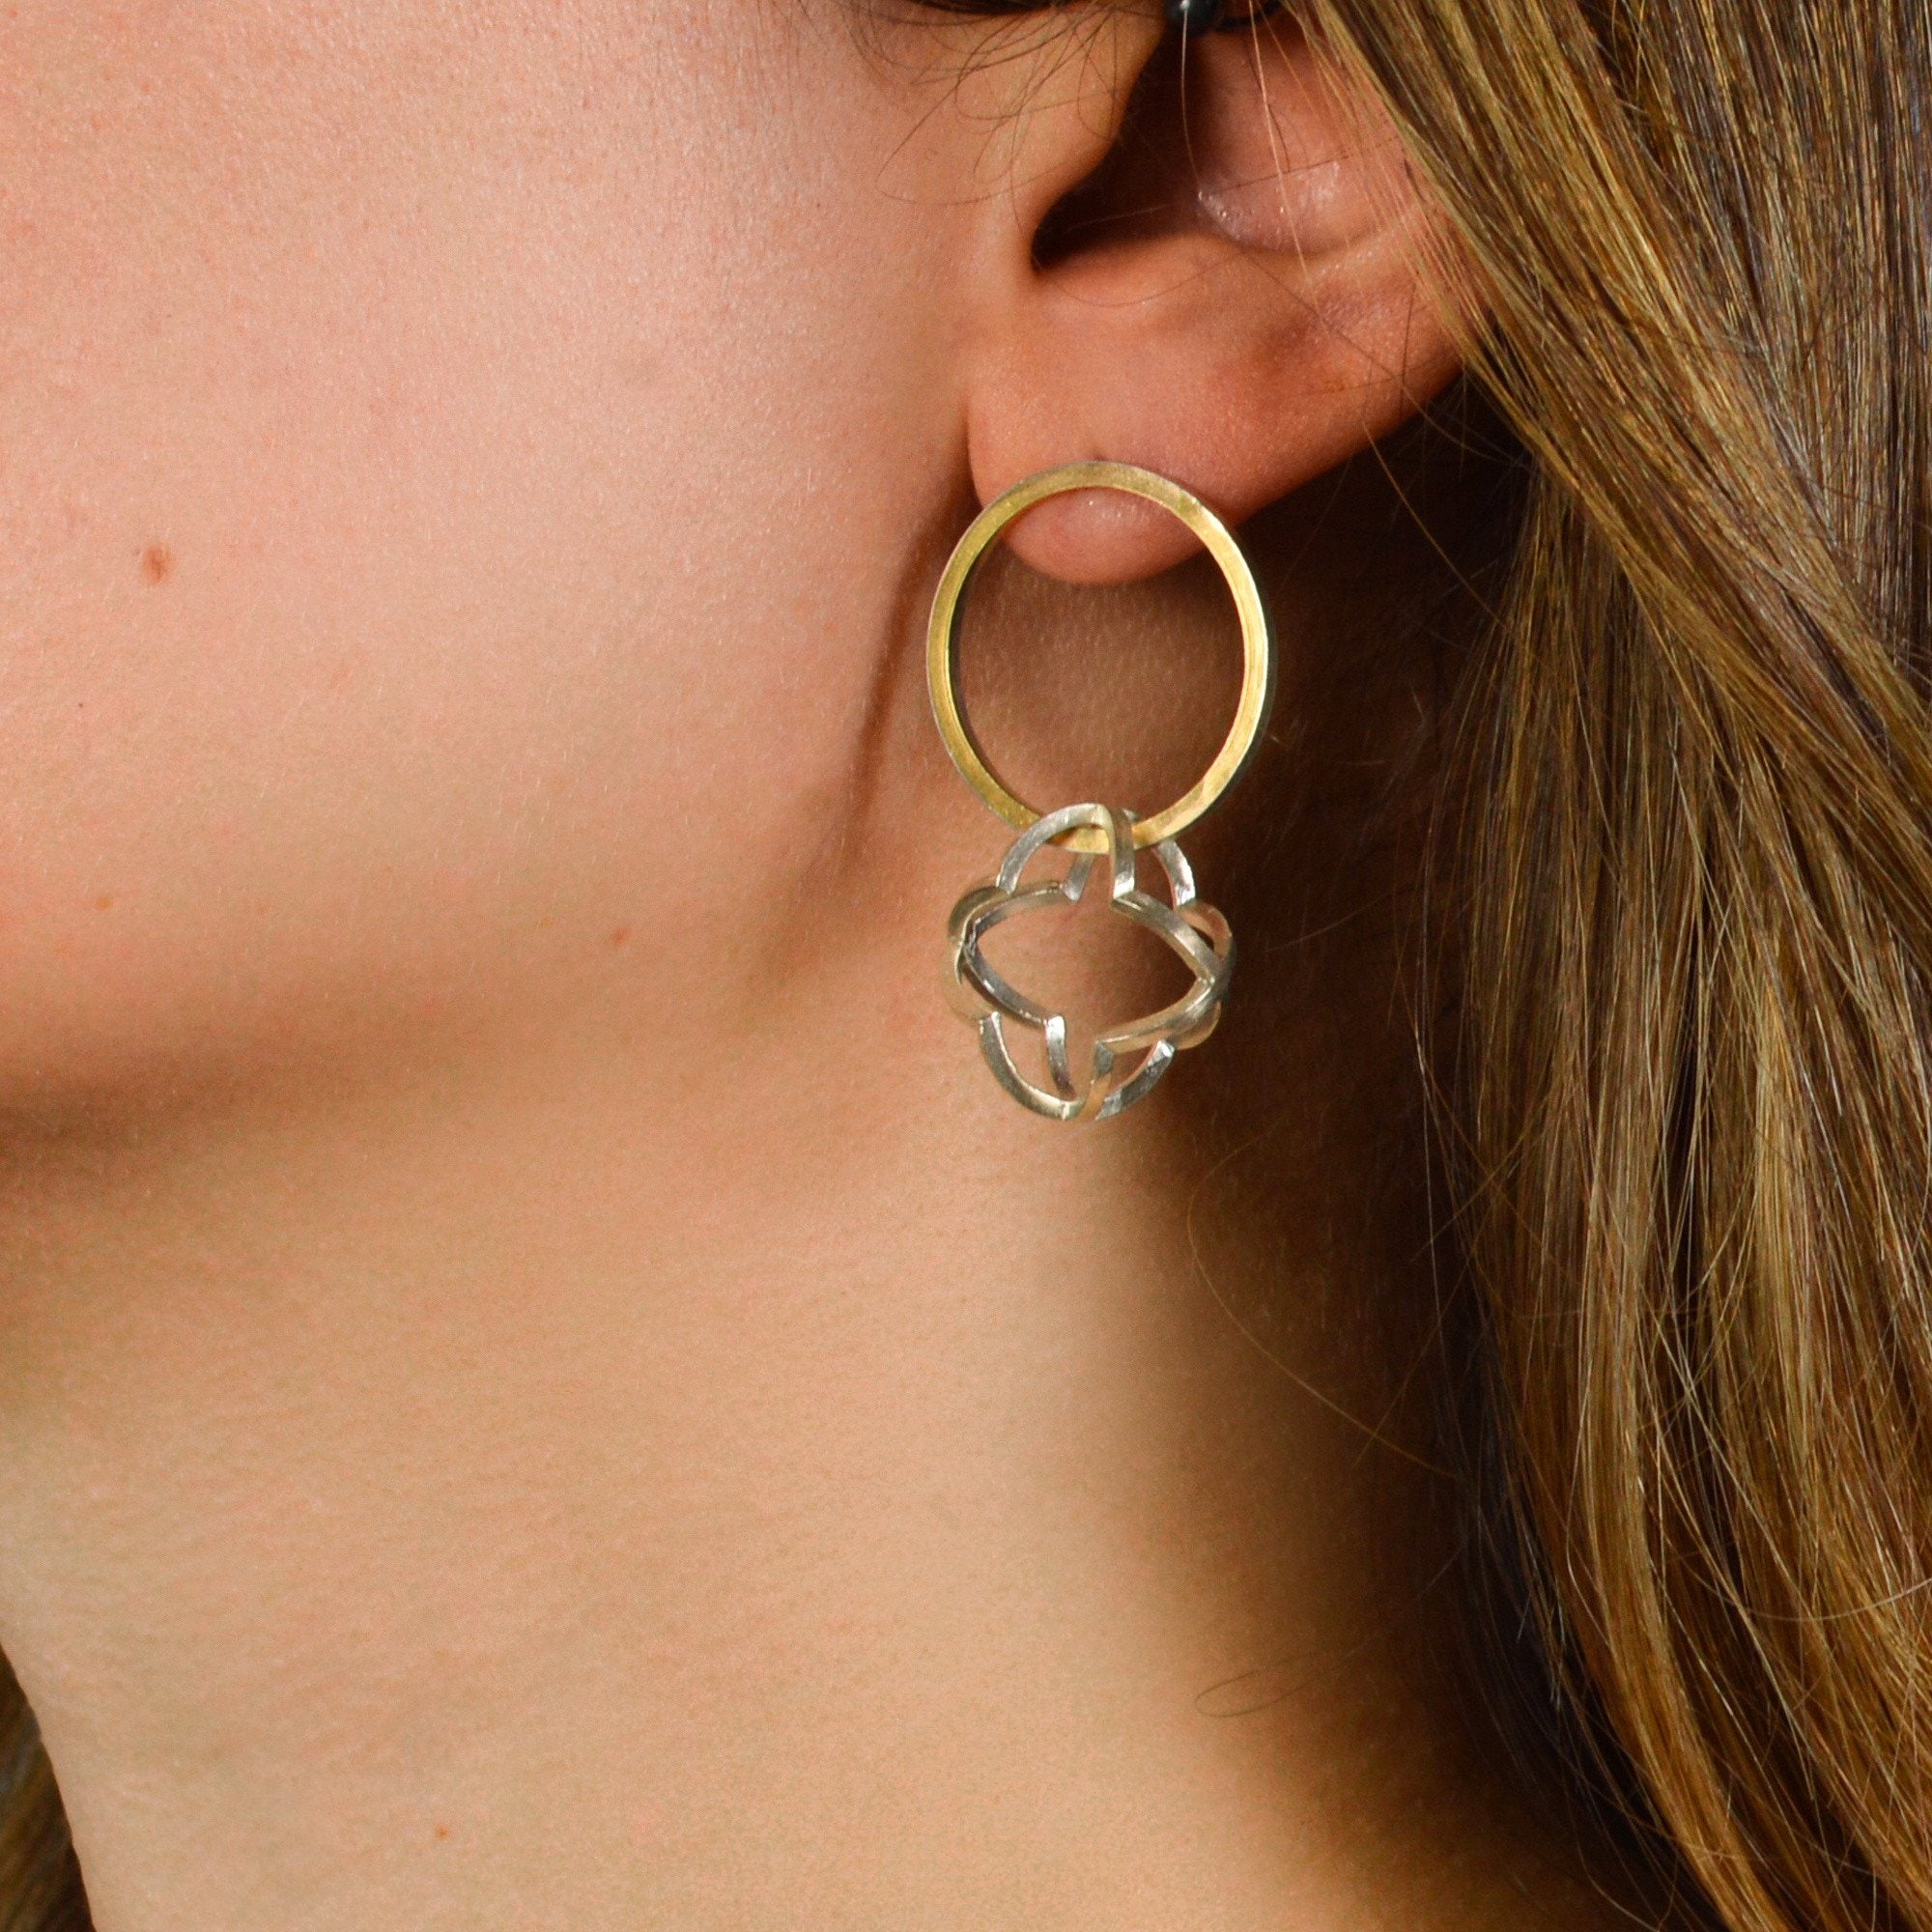 Quatrefoil Orbit Hoop Earrings in 22k gold and sterling silver